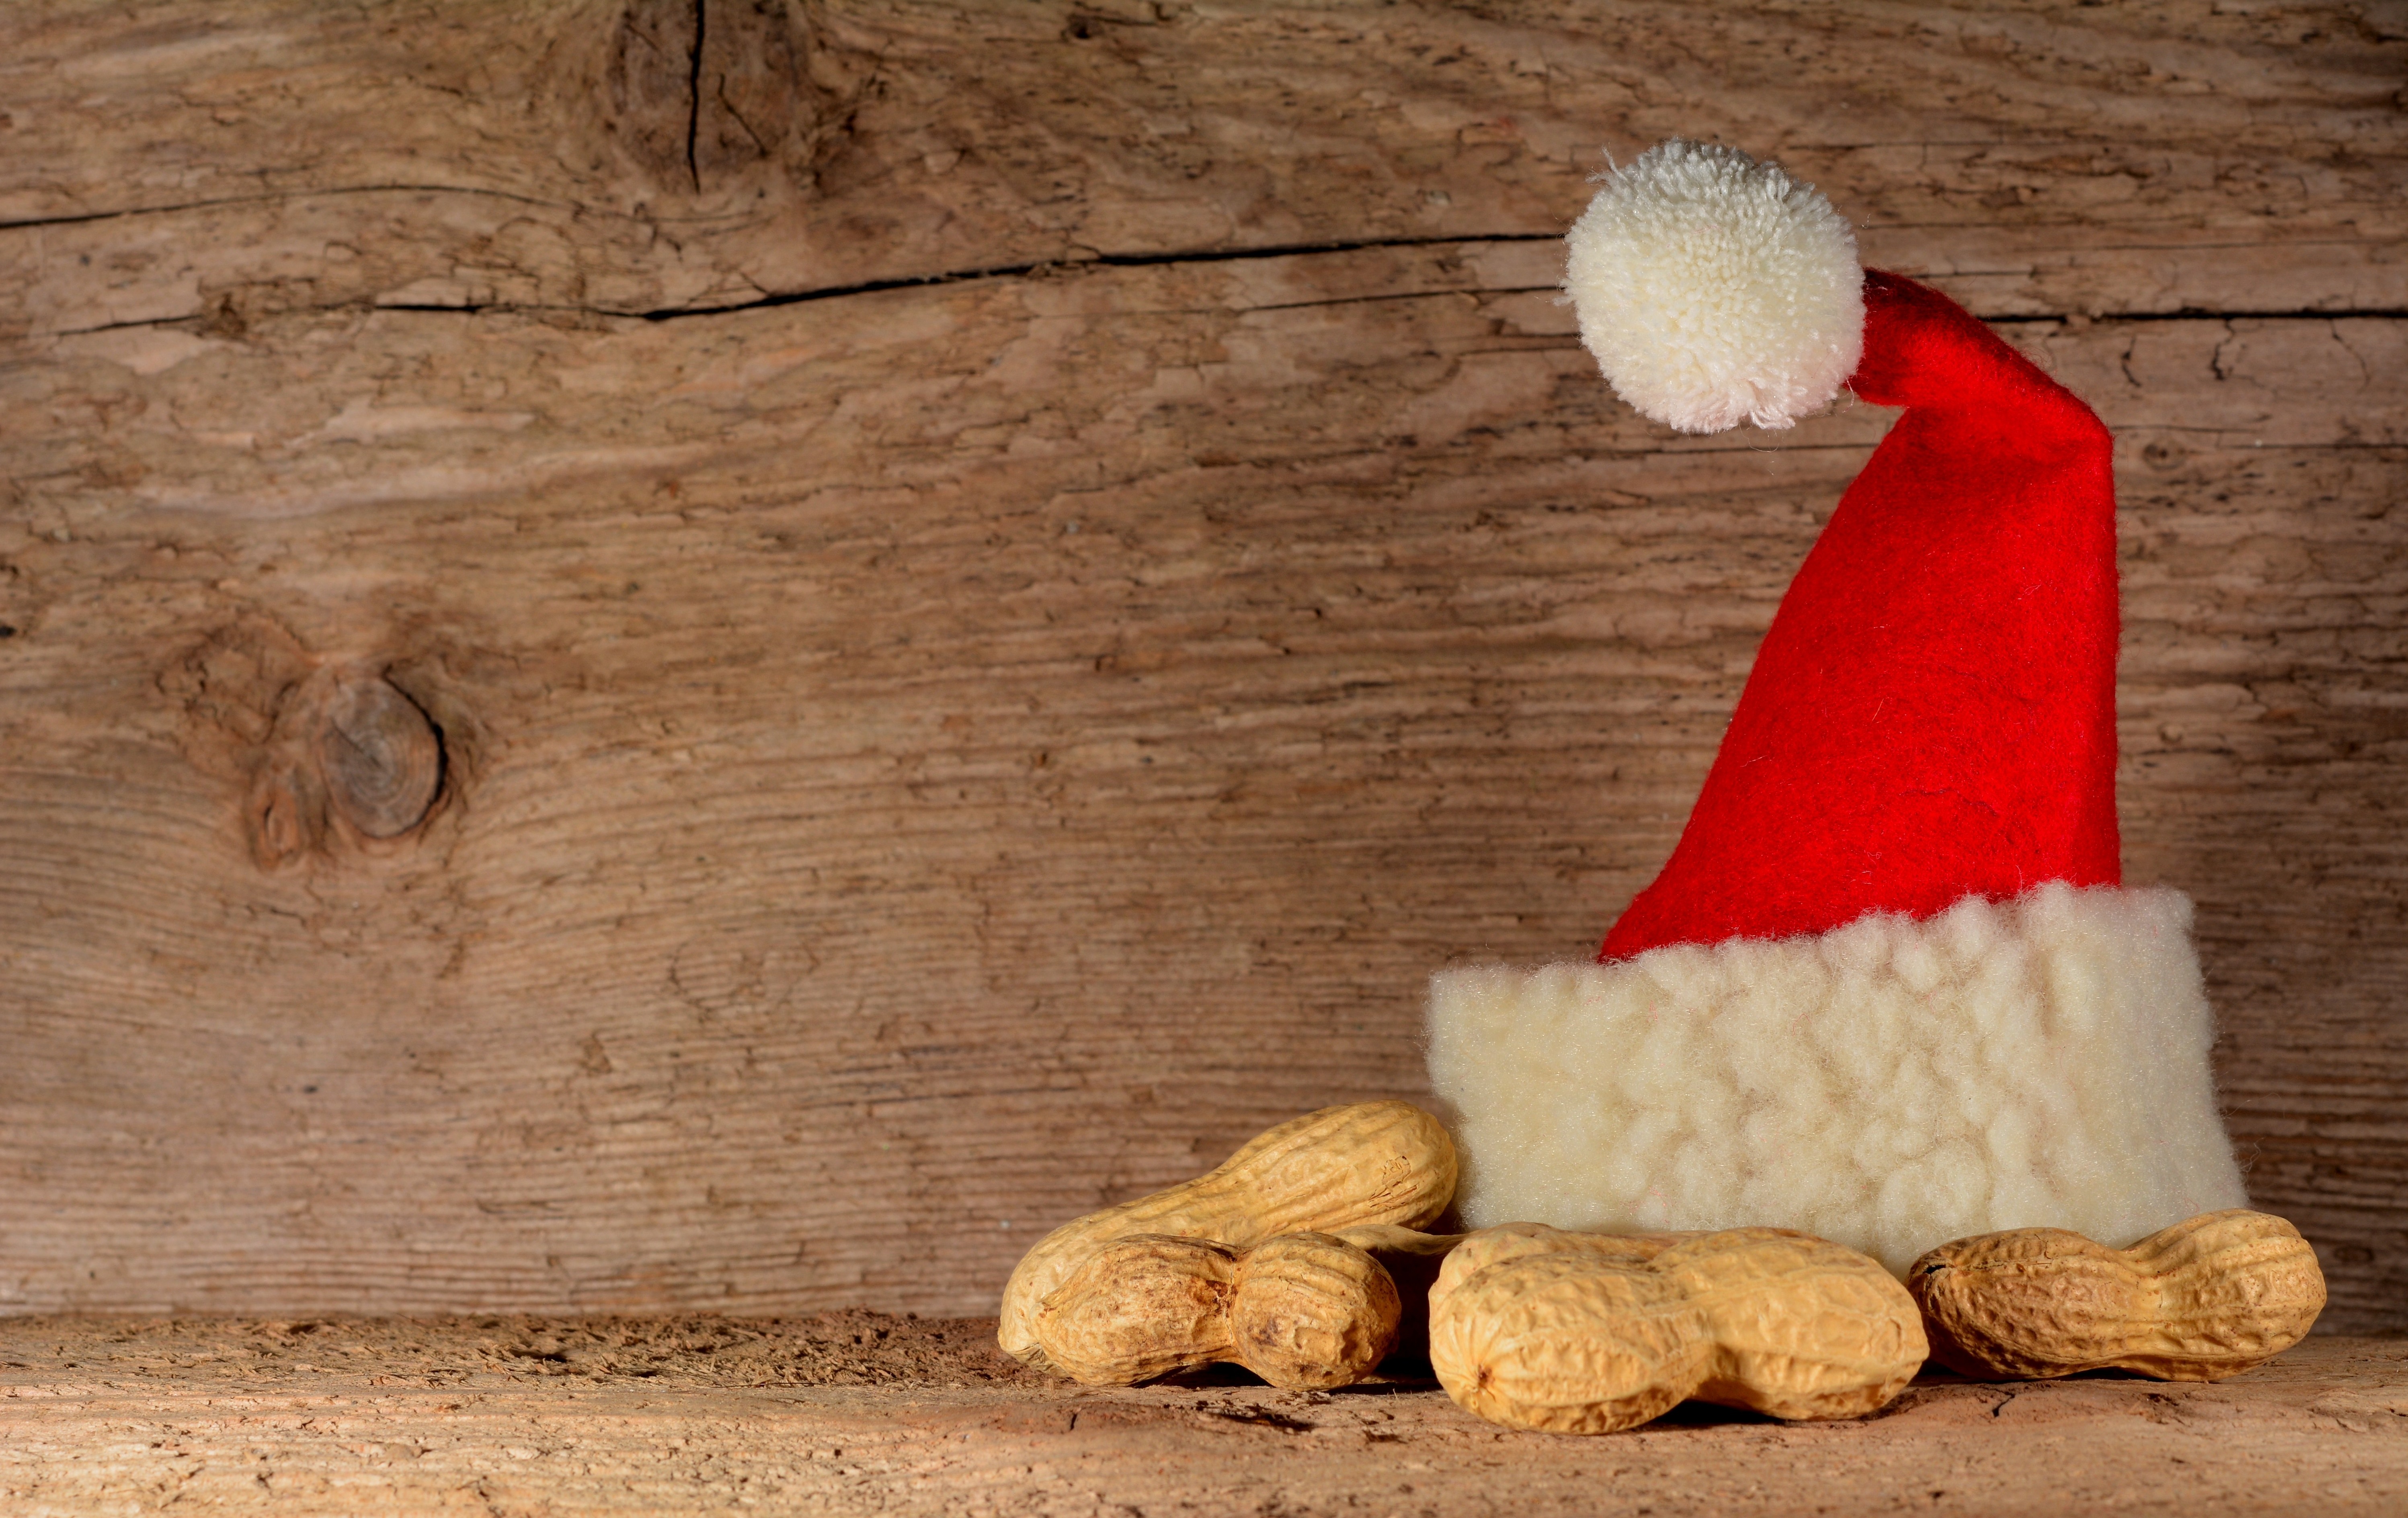 Фото древесина, еда, рождество, деко, ткань, пришествие, рождественское украшение, шапка санты, фон, солома, резьбы, арахис, семейство травянистых, новый год - бесплатные картинки на Fonwall